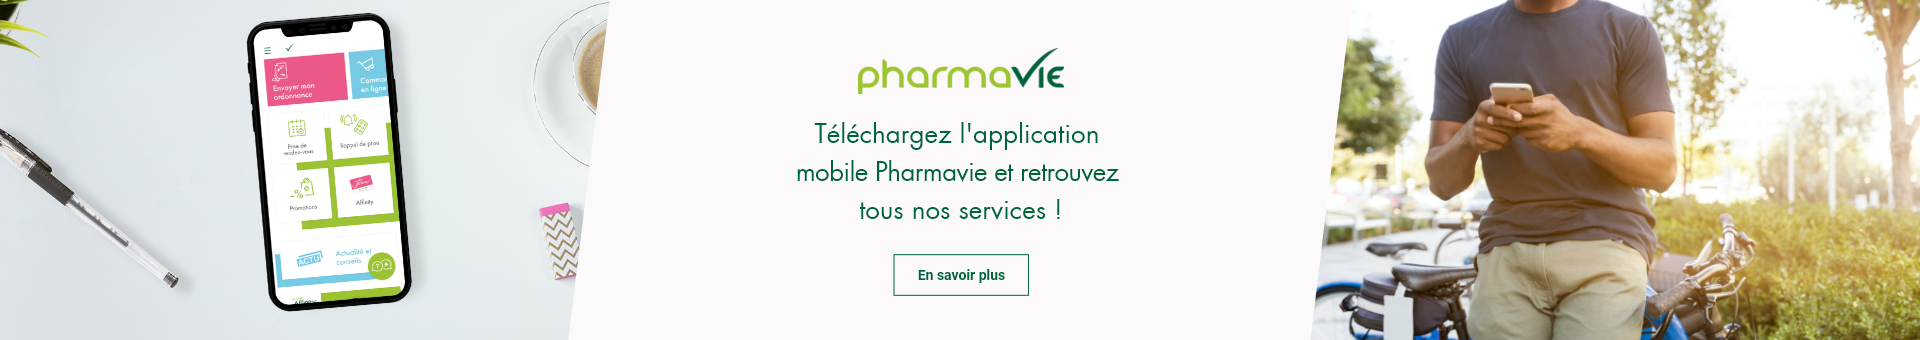 Smartphone avec à l'écran l'application mobile Pharmavie et tous ses services